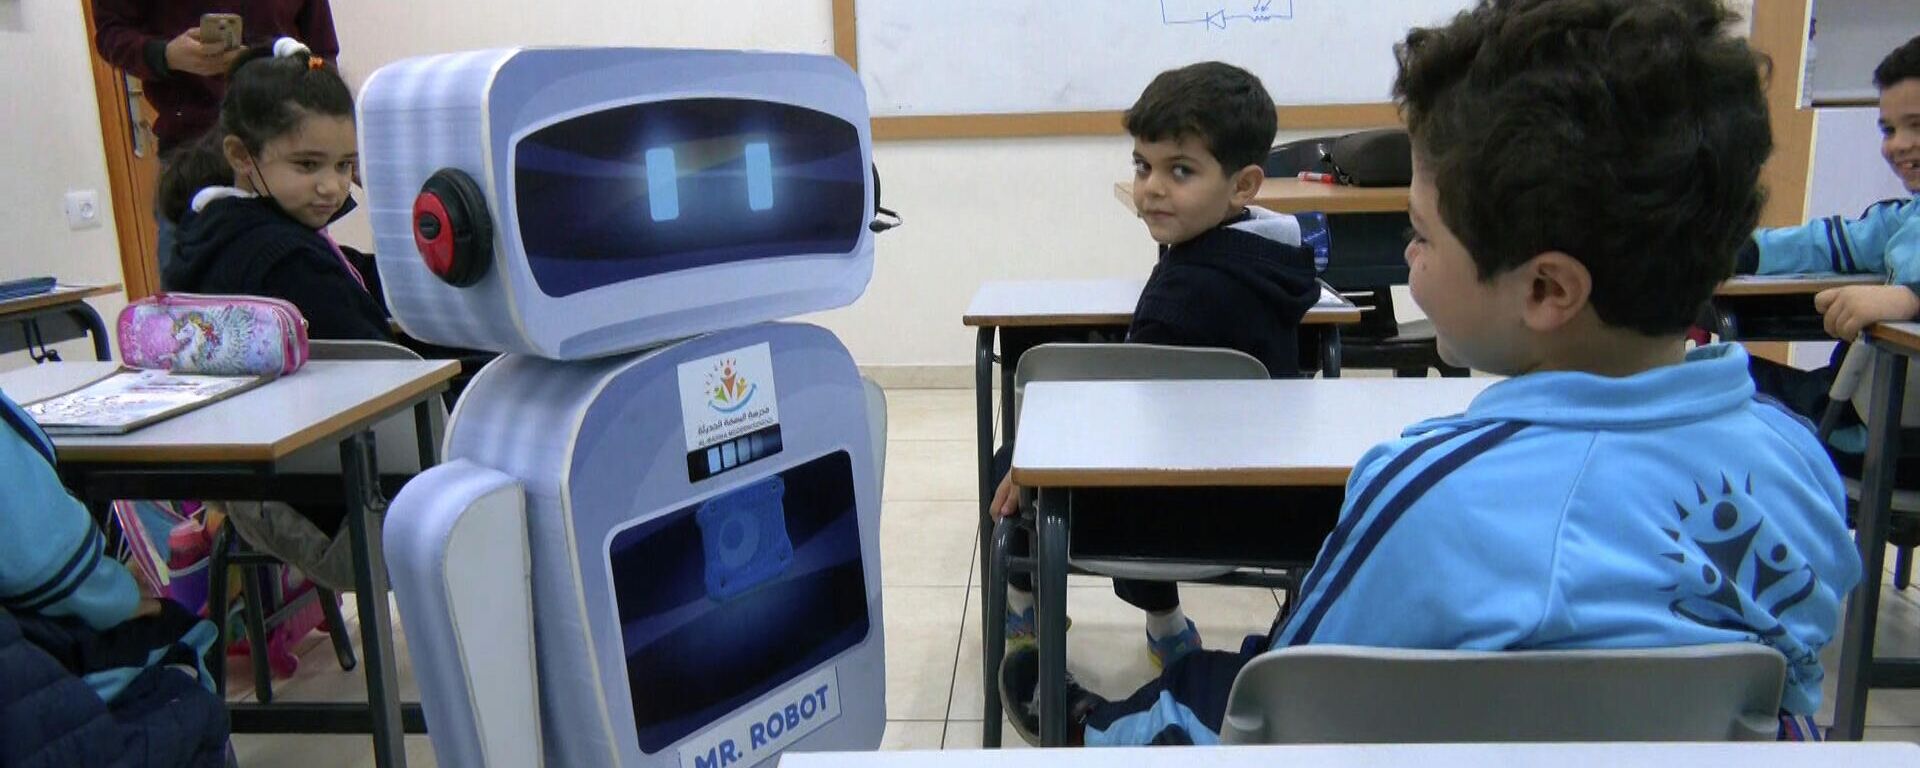 مستر روبوت يساعد تلاميذ المدرسة على الدراسة أثناء الفصل في إحدى مدارس غزة، قطاع غزة، فلسطين - سبوتنيك عربي, 1920, 12.12.2021